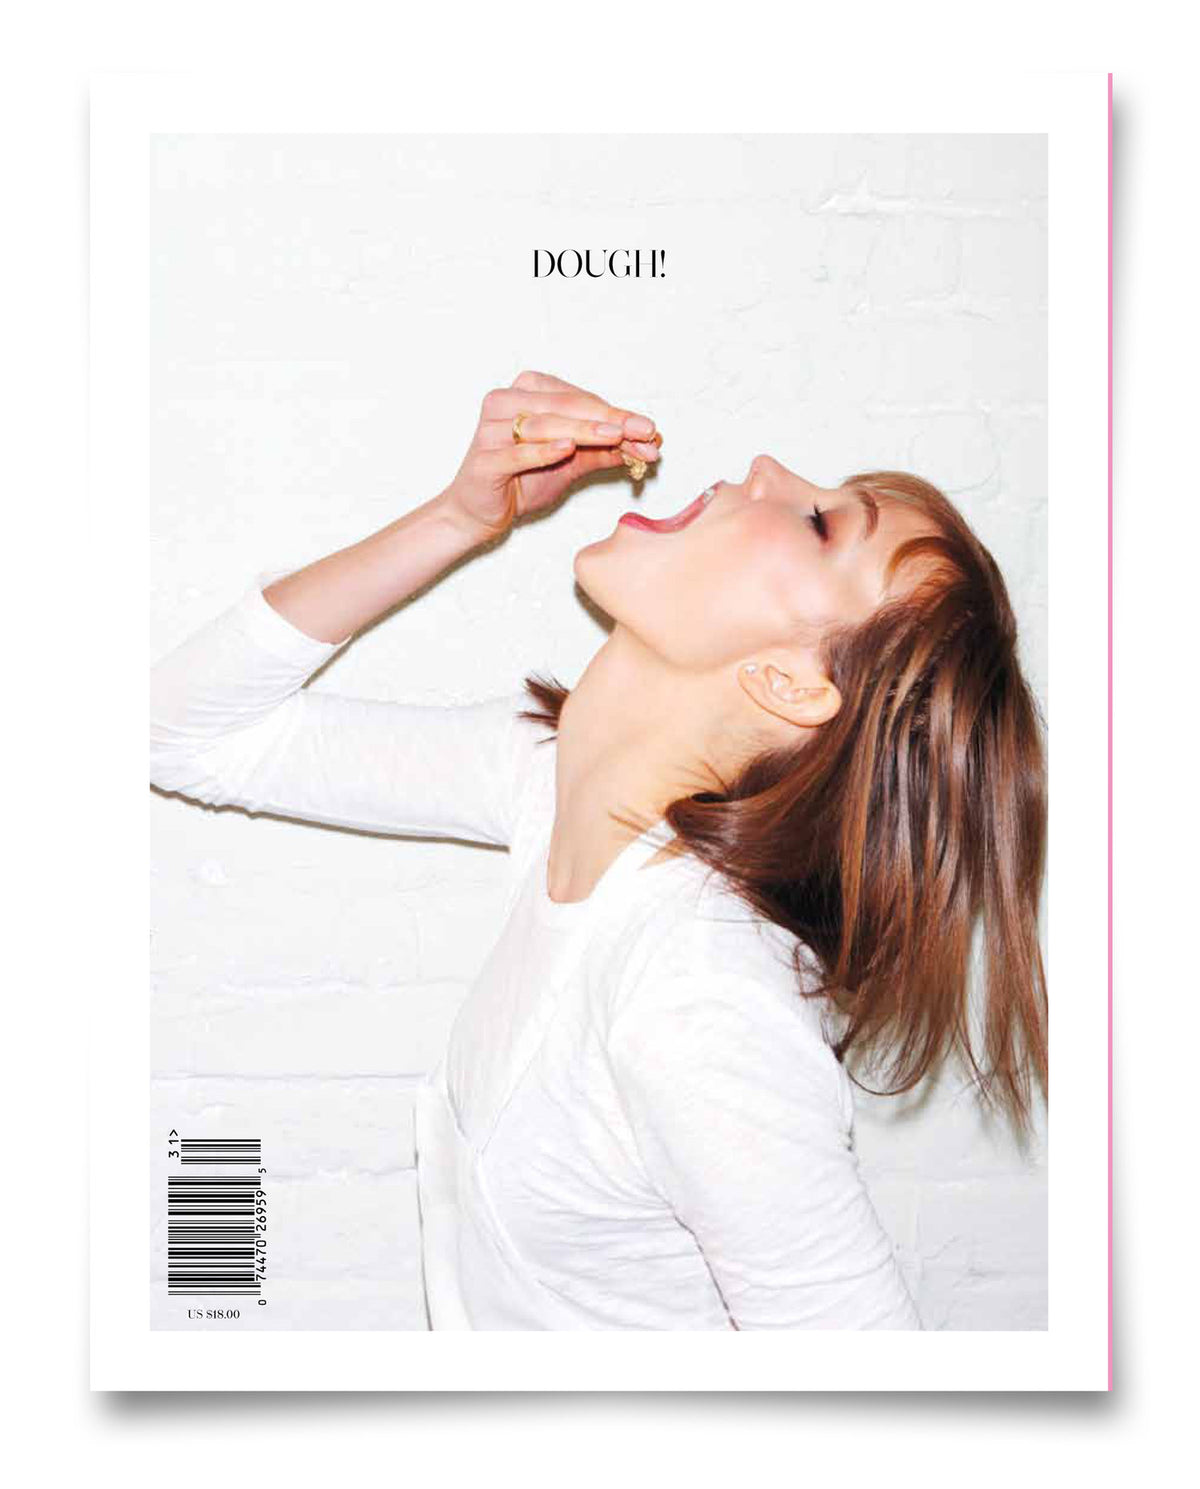 Issue No. 1: Tastemaker